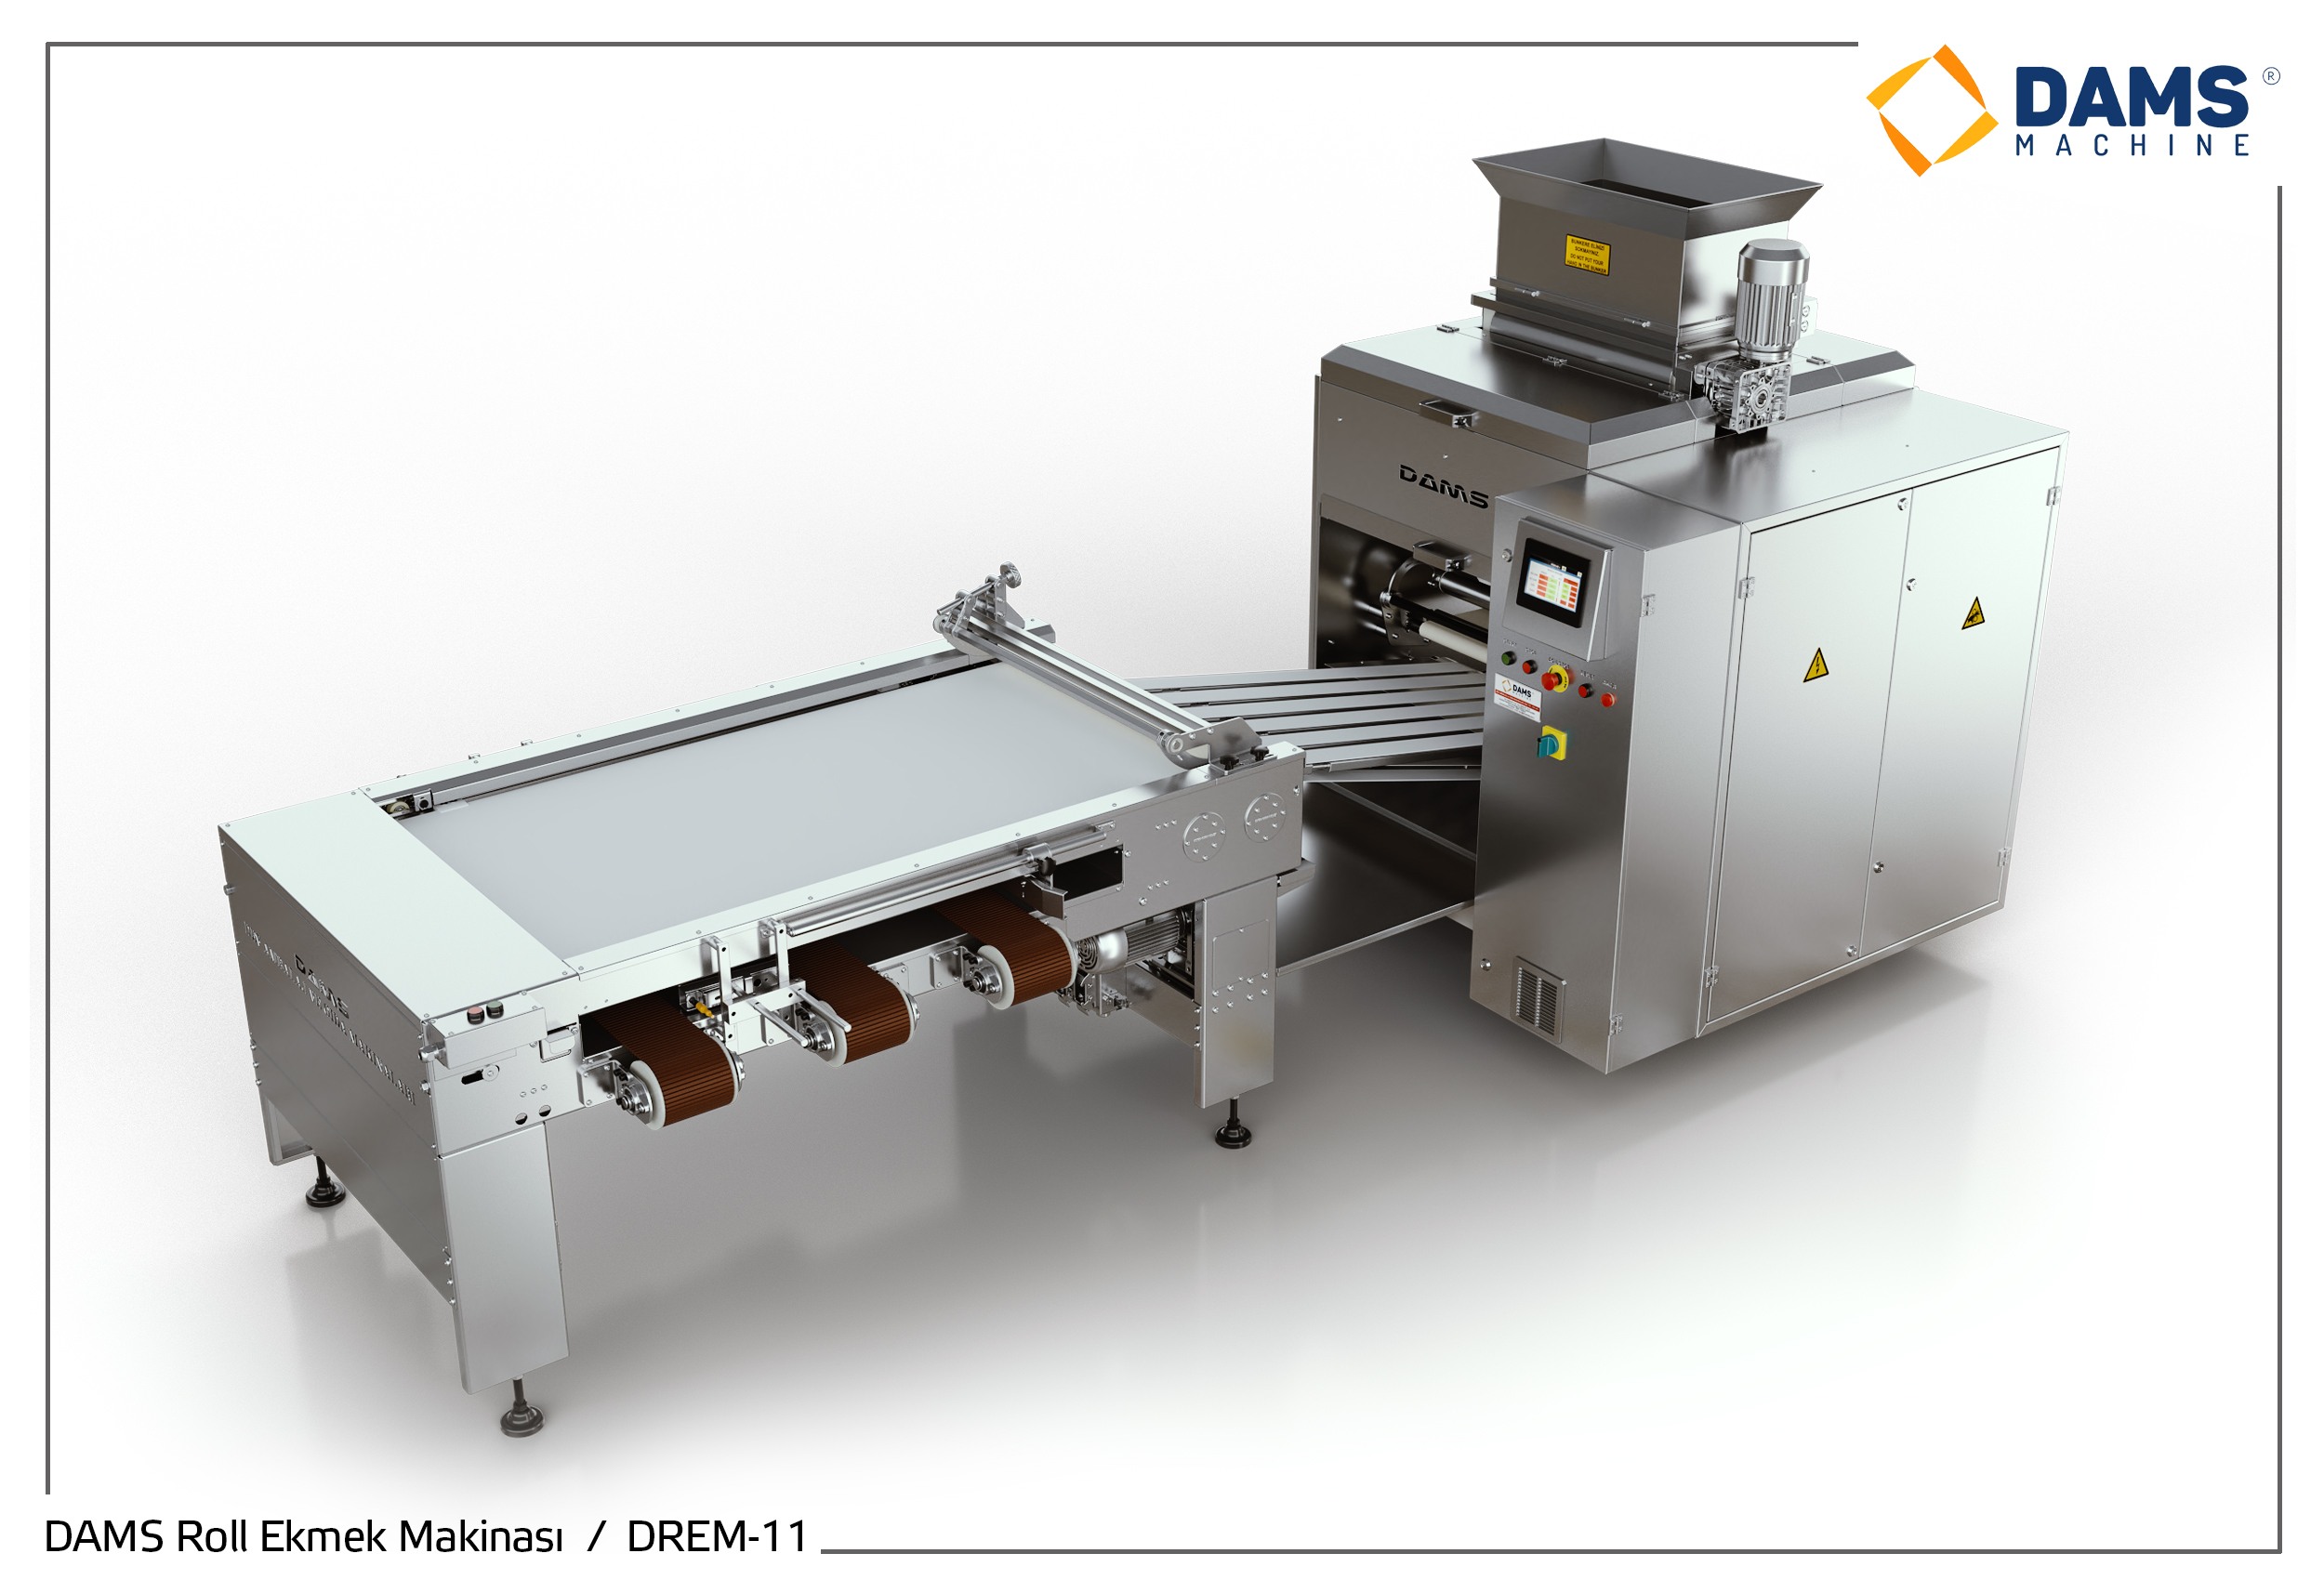 DAMS Roll Ekmek Makinası DREM - 11